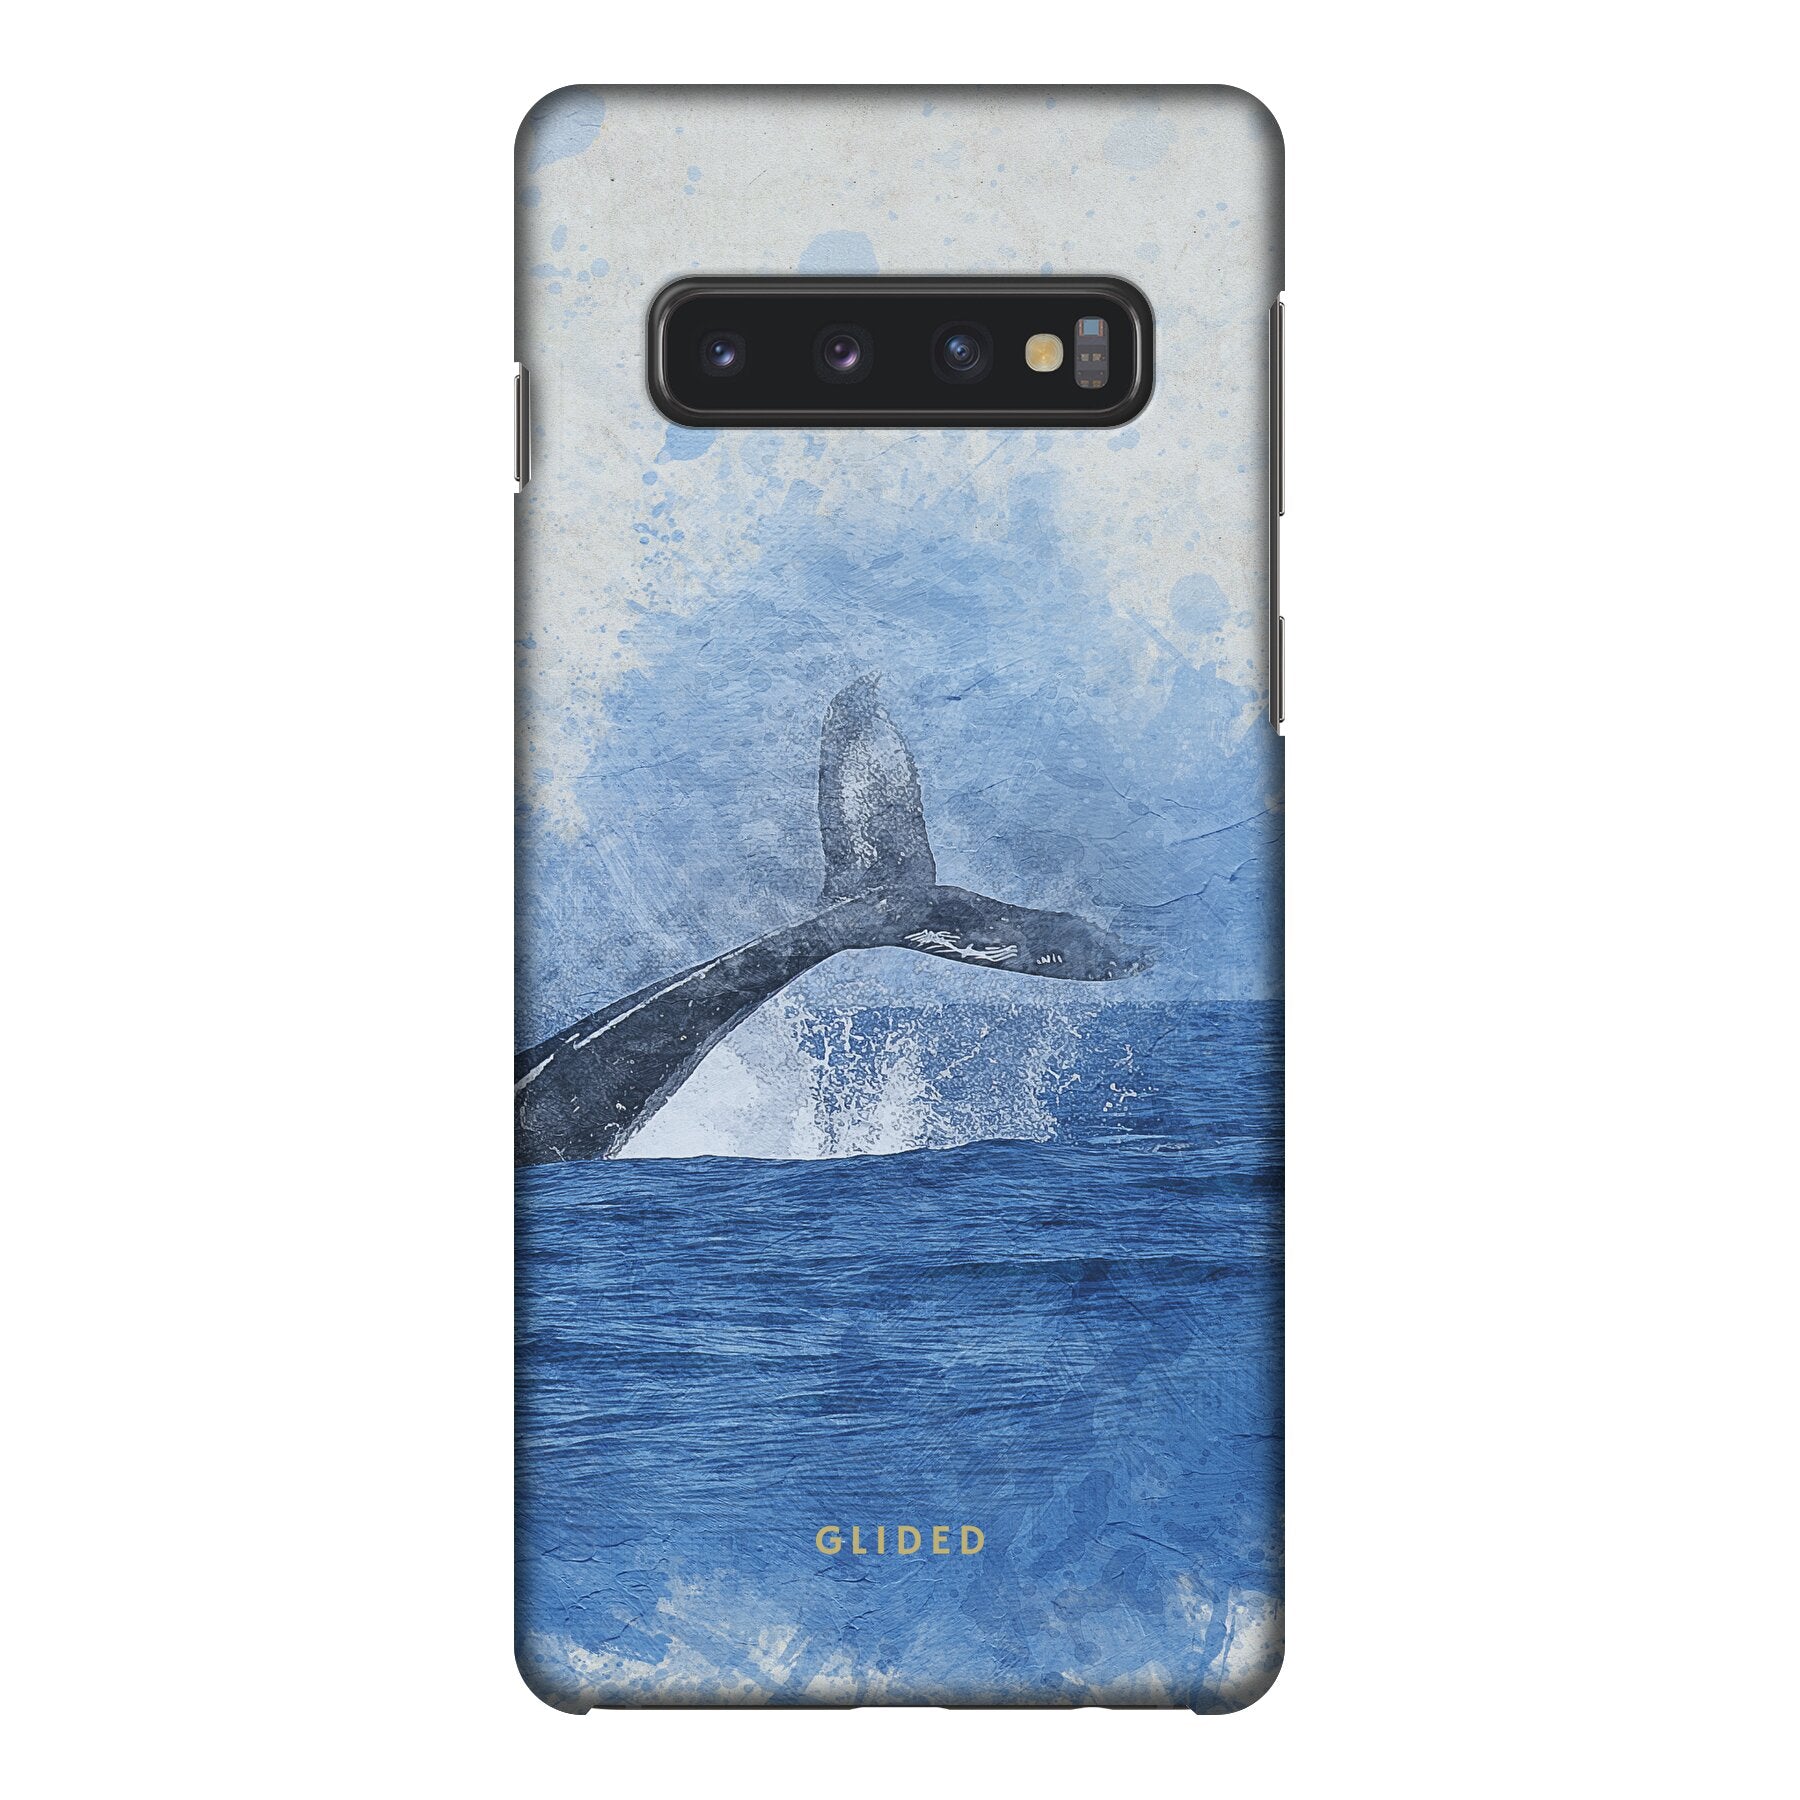 Oceanic - Samsung Galaxy S10 Handyhülle Tough case